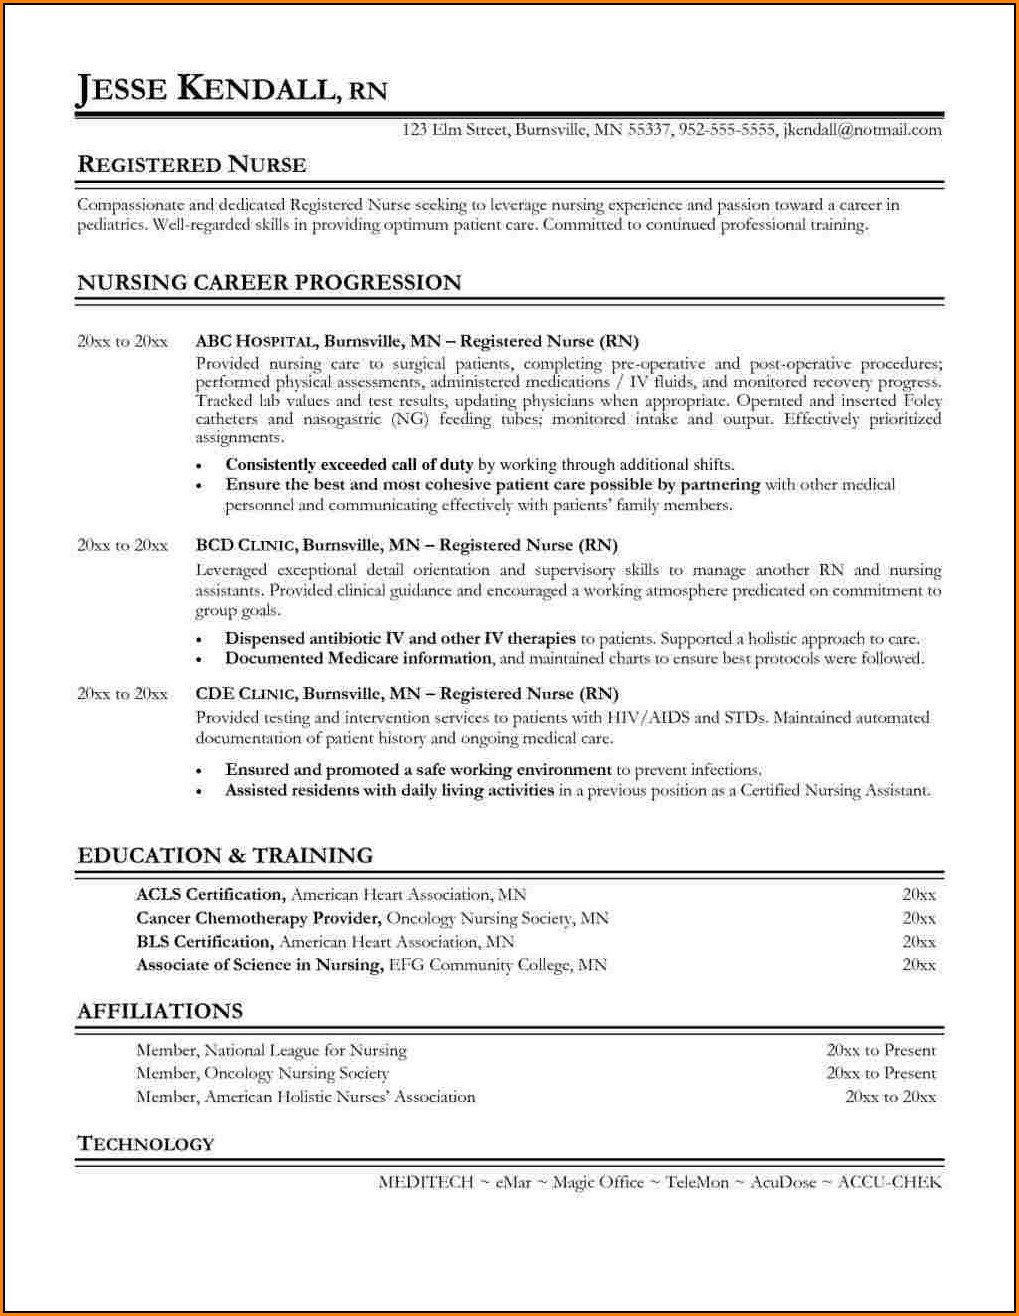 Sample Resume For A Registered Nurse